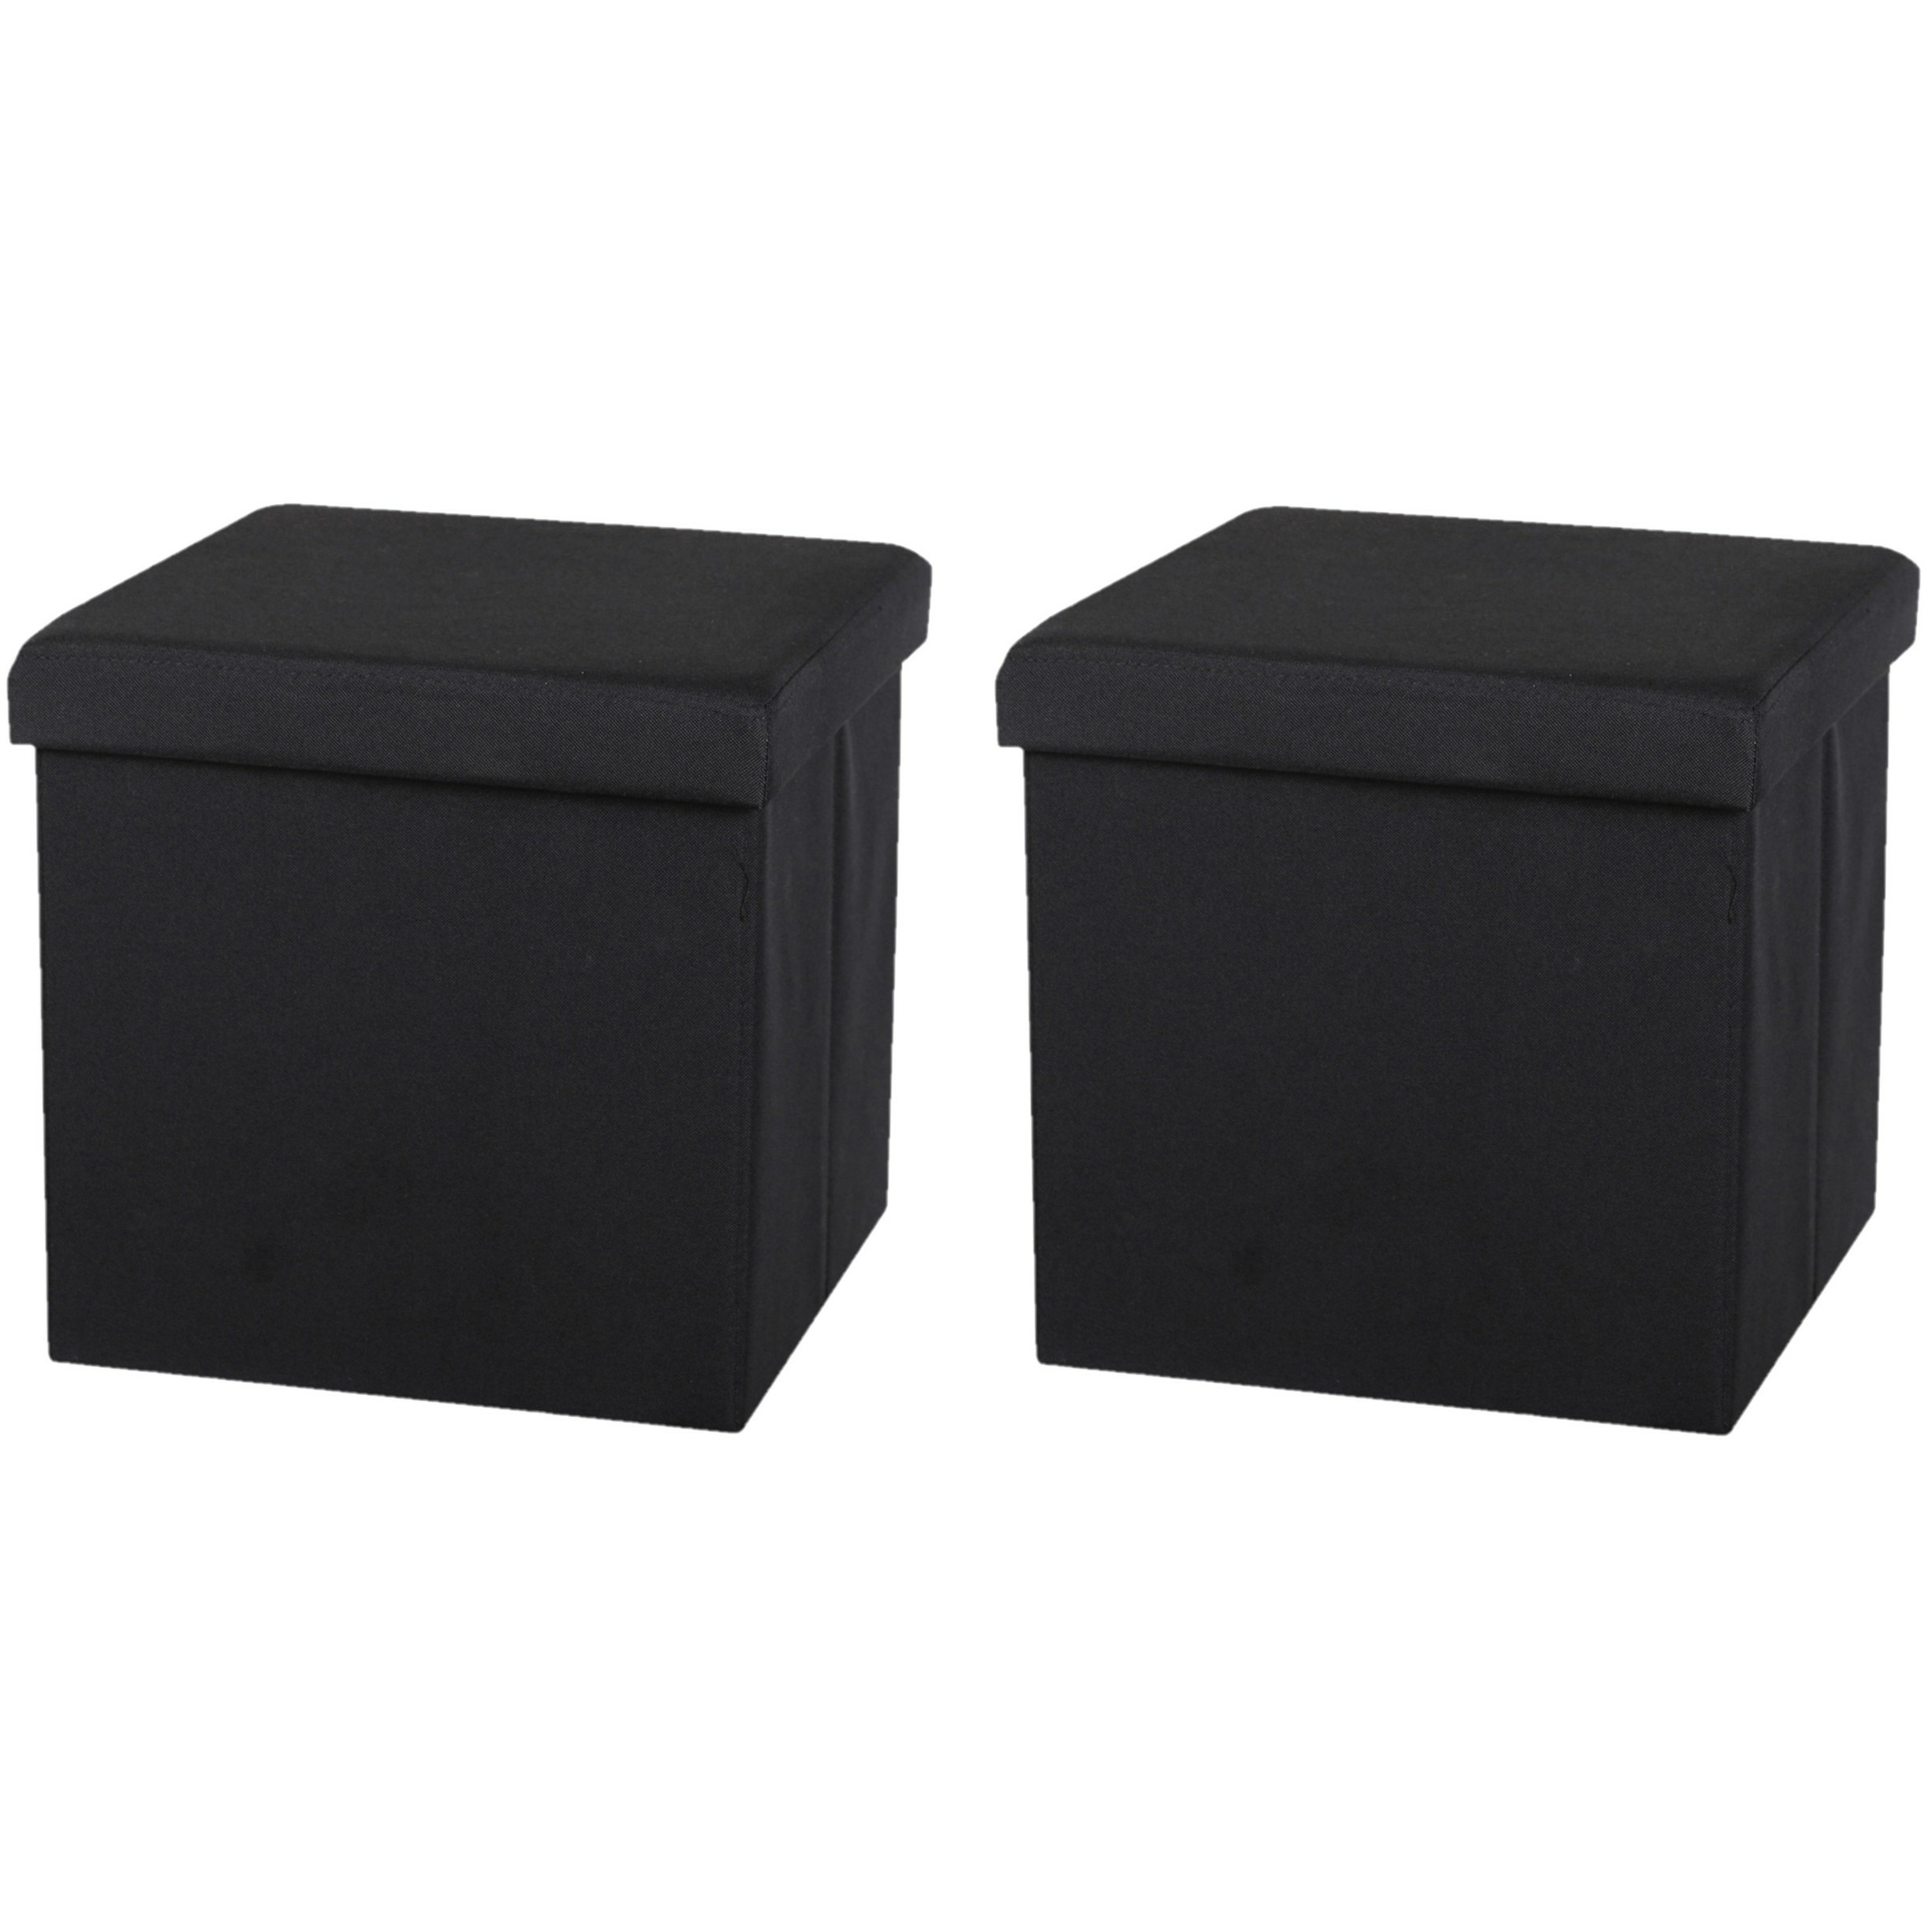 Poef-hocker 2x opbergbox zit krukje zwart linnen-mdf 37 x 37 cm opvouwbaar